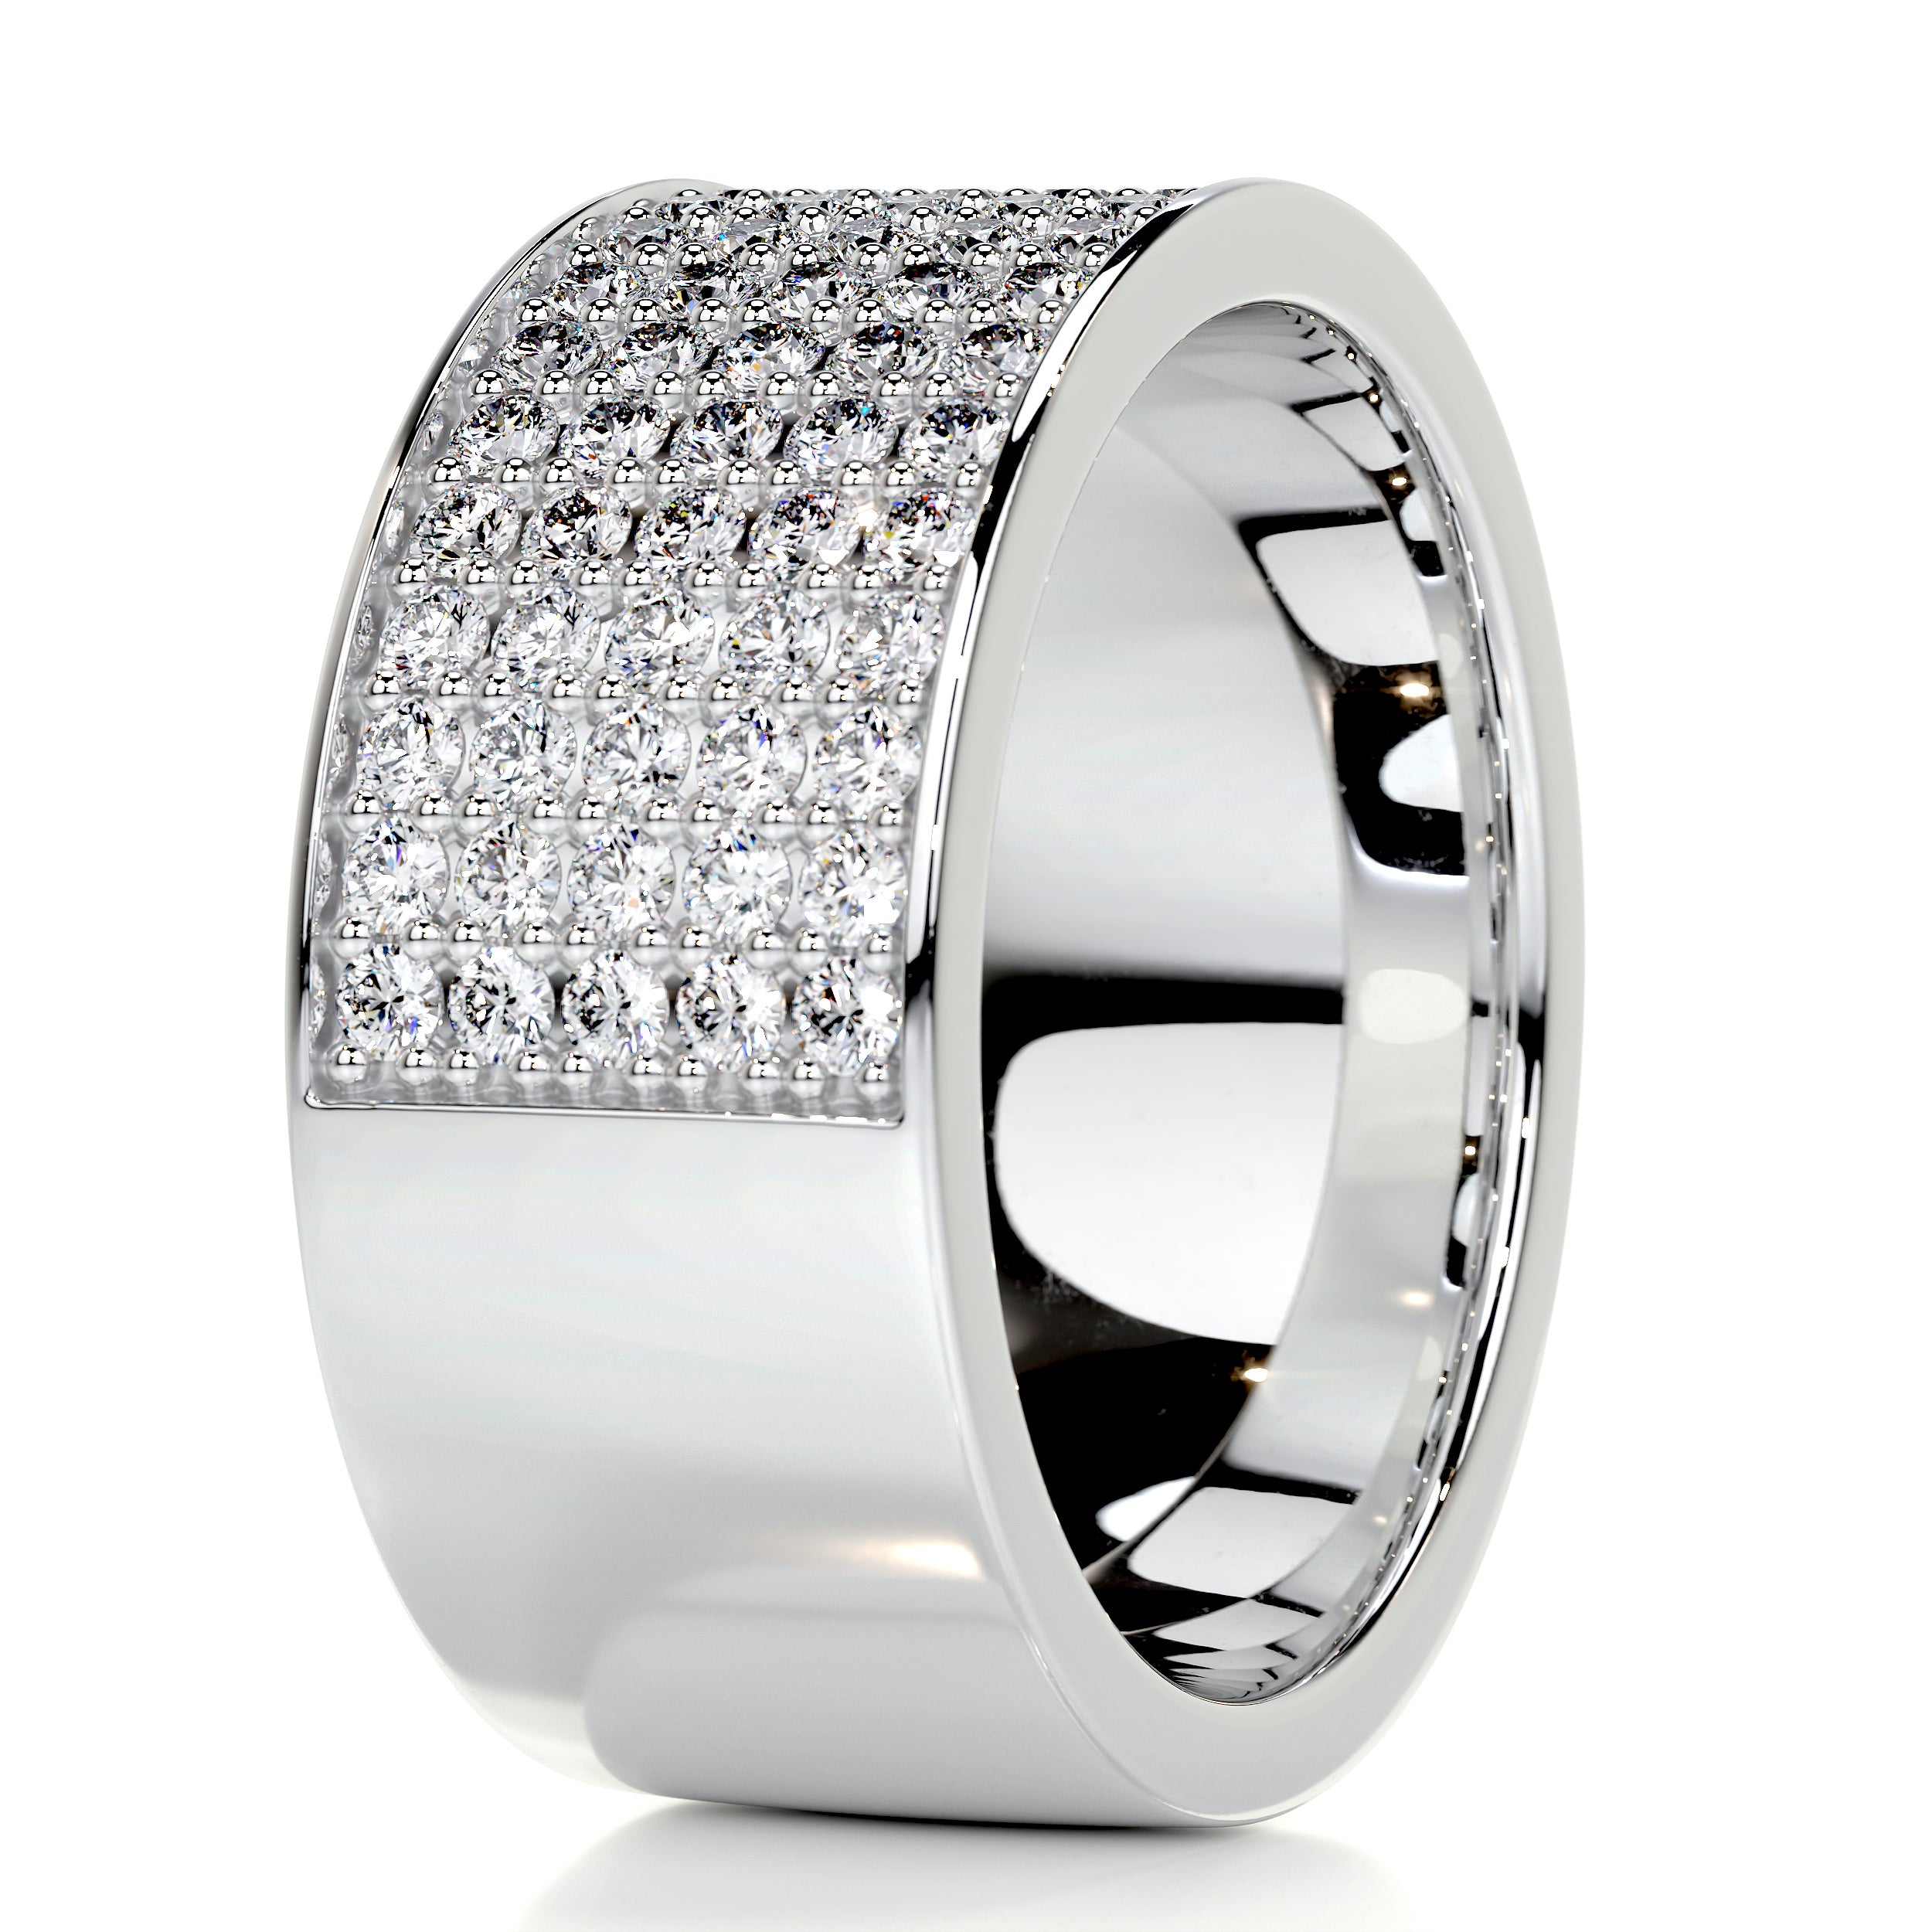 June Diamond Wedding Ring   (1 Carat) -14K White Gold